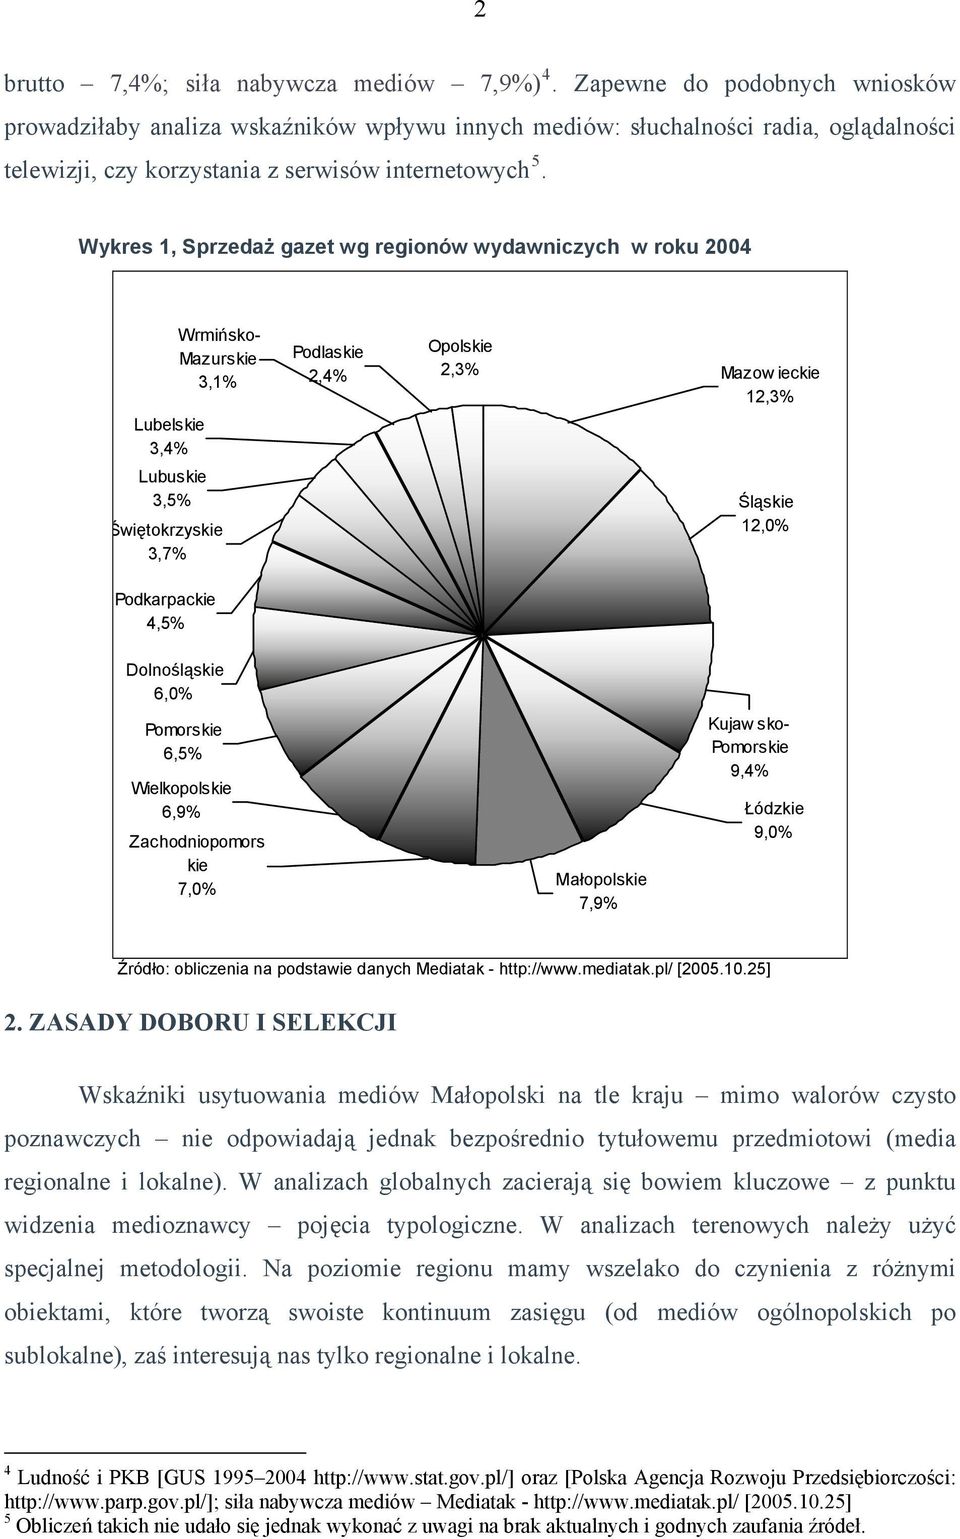 Wykres 1, Sprzedaż gazet wg regionów wydawniczych w roku 2004 Lubelskie 3,4% Lubuskie 3,5% Świętokrzyskie 3,7% Podkarpackie 4,5% Wrmińsko- Mazurskie 3,1% Podlaskie 2,4% Opolskie 2,3% Mazow ieckie